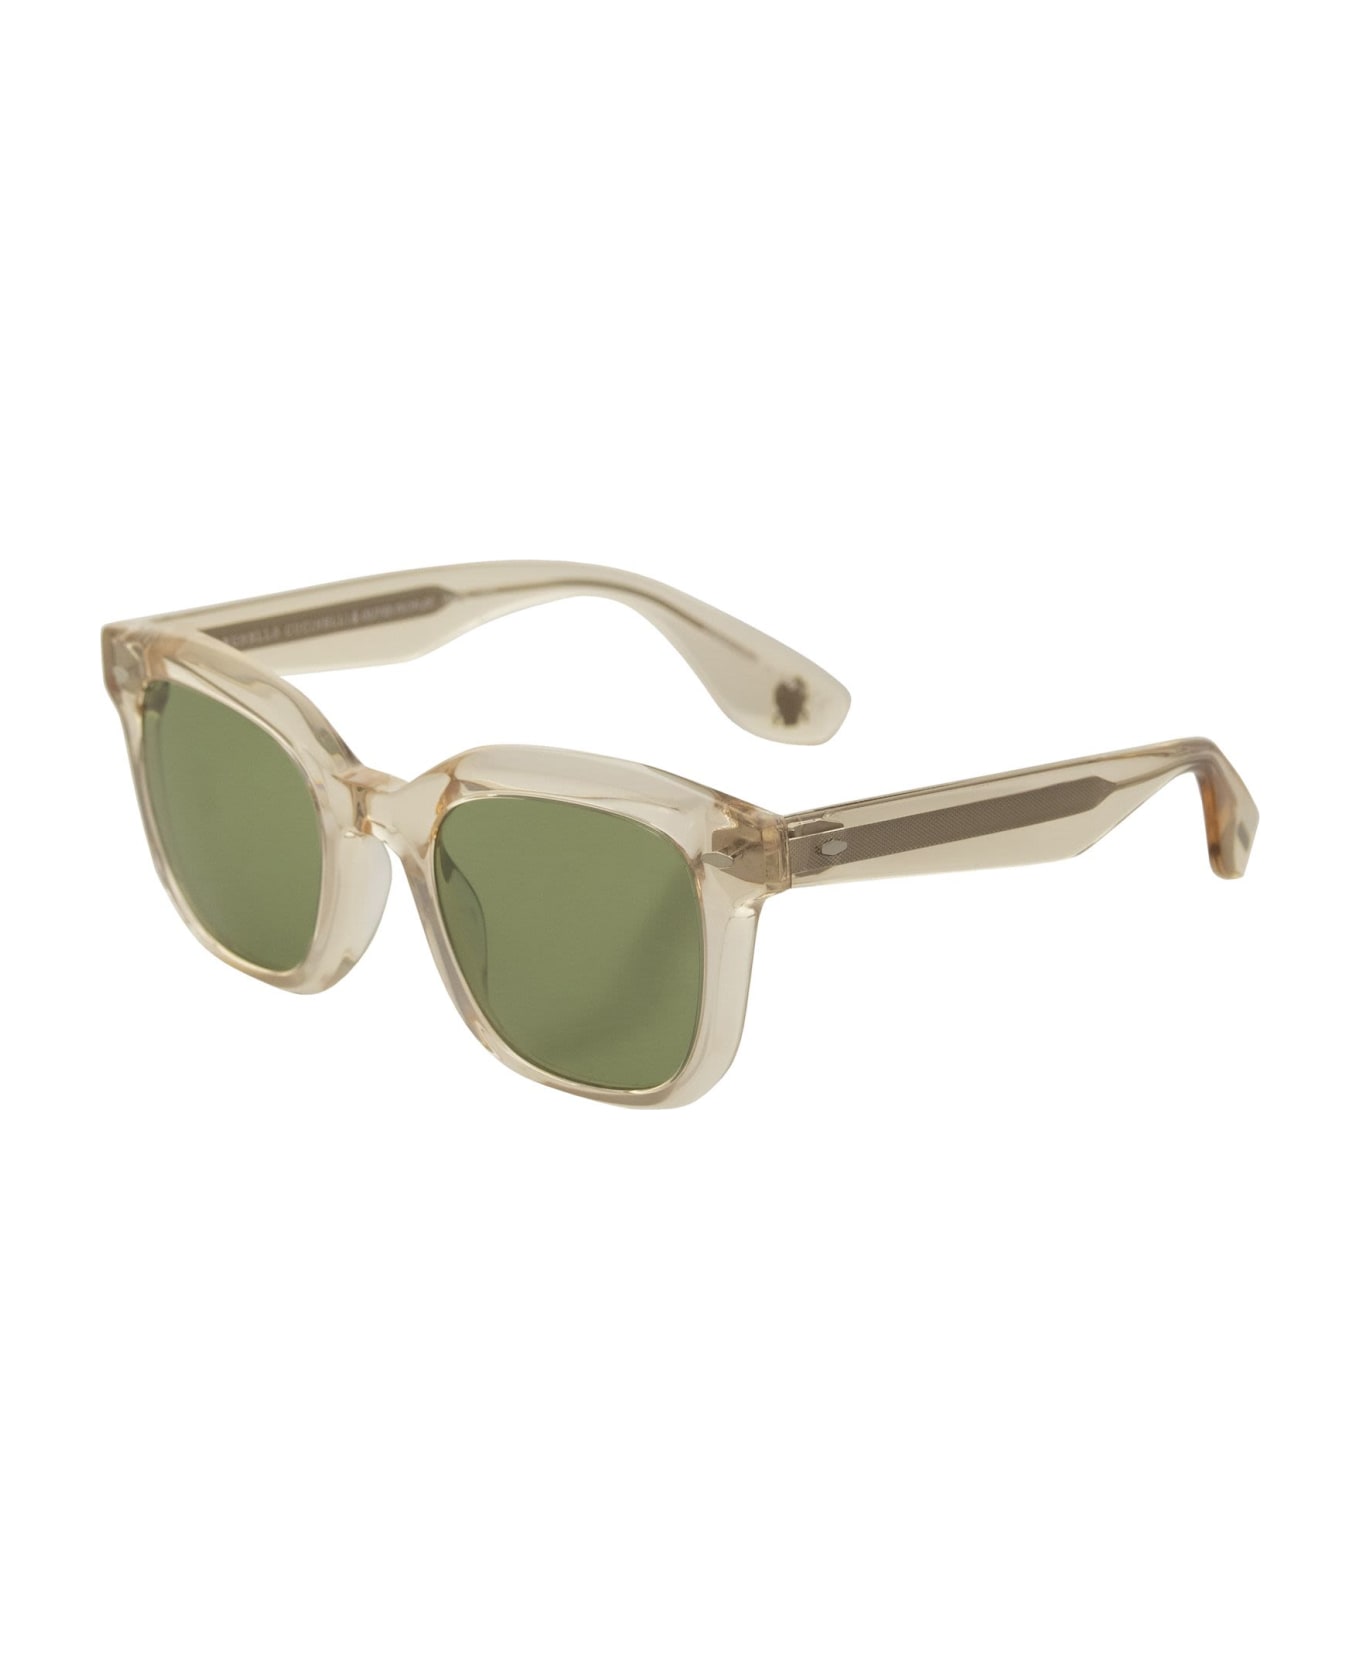 Brunello Cucinelli Acetate Filù Sunglasses With Classic Lenses - Light Beige